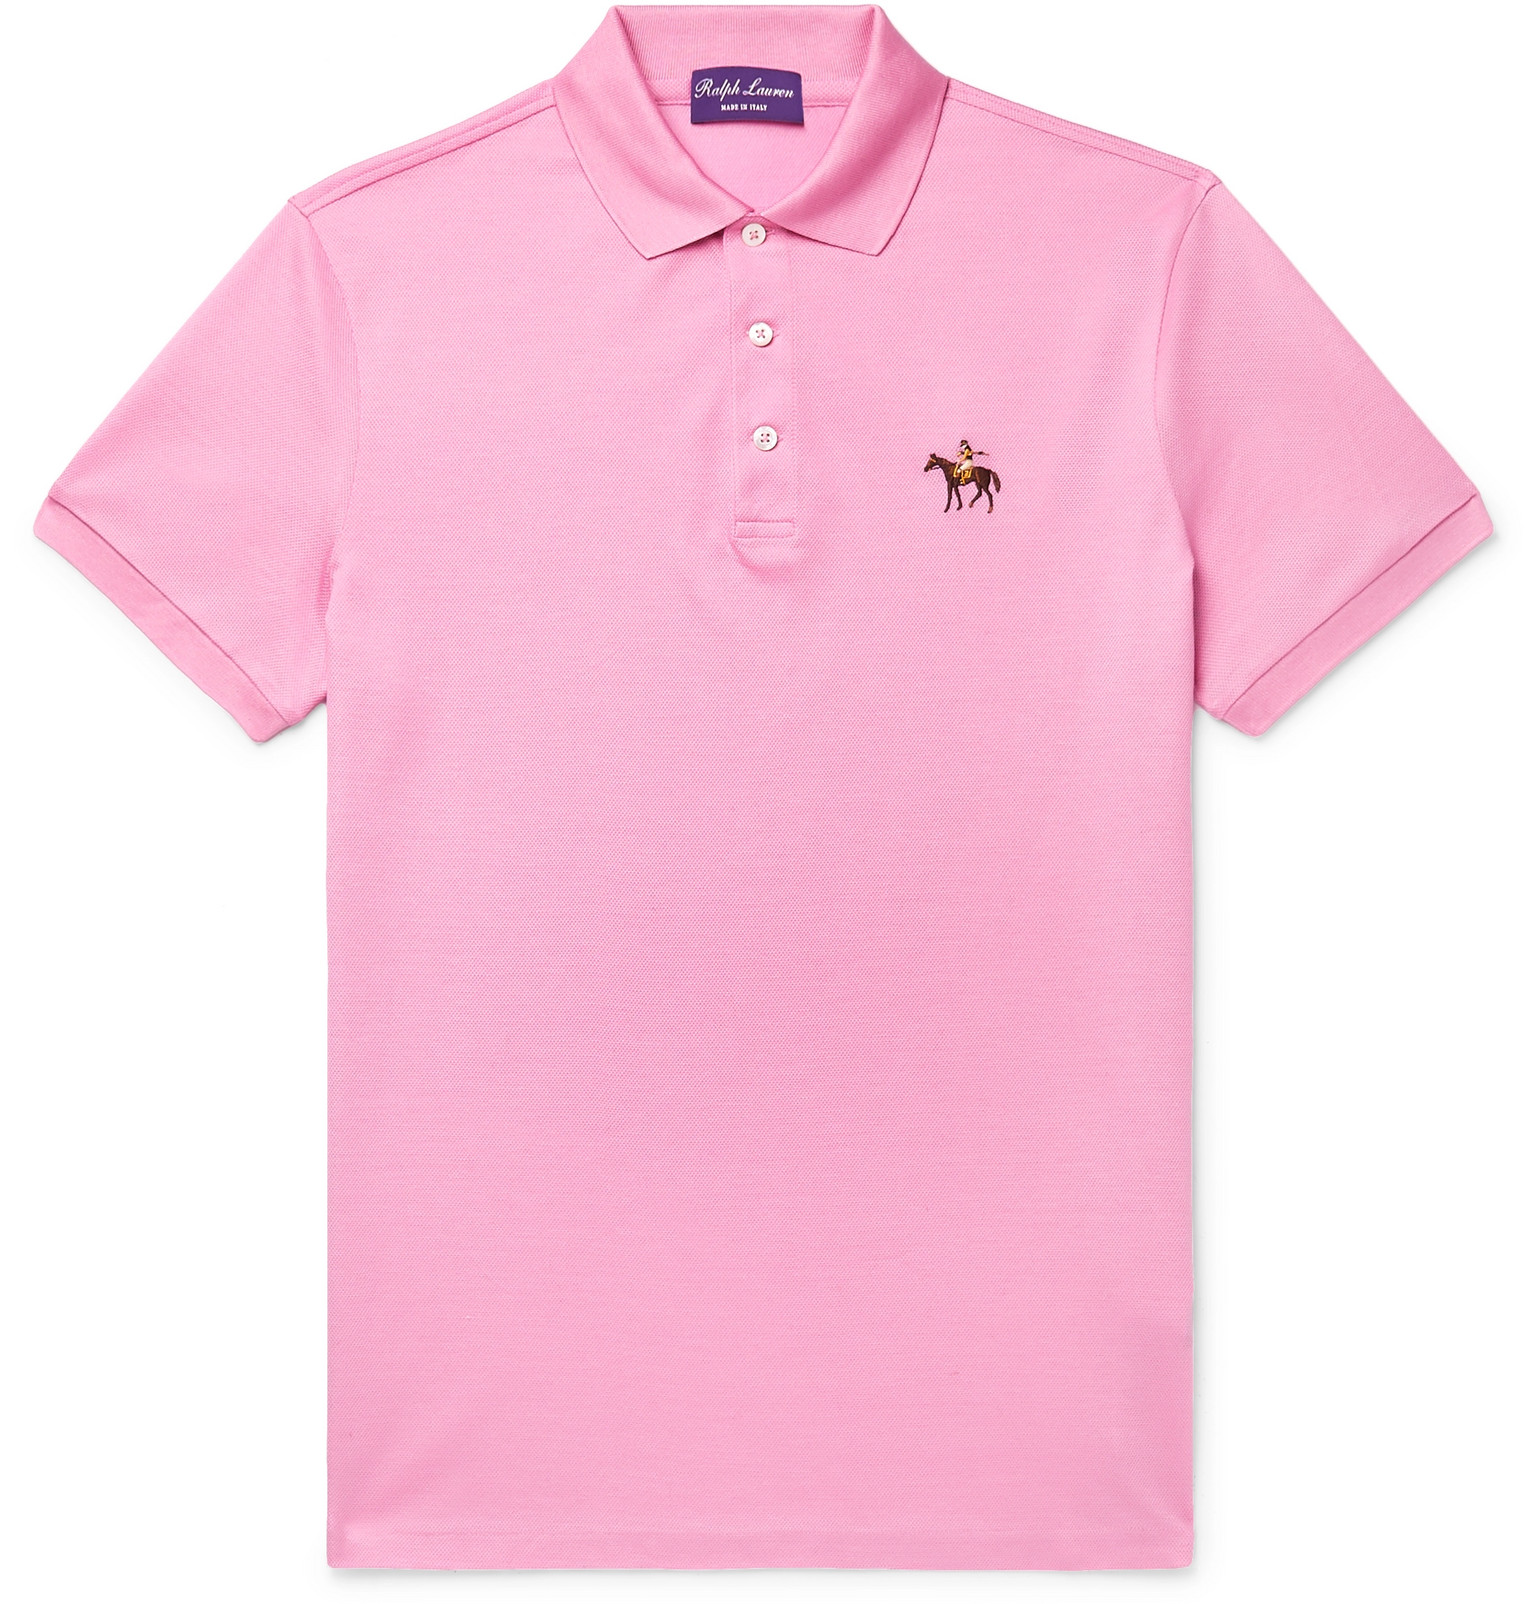 mens pink polo shirt ralph lauren